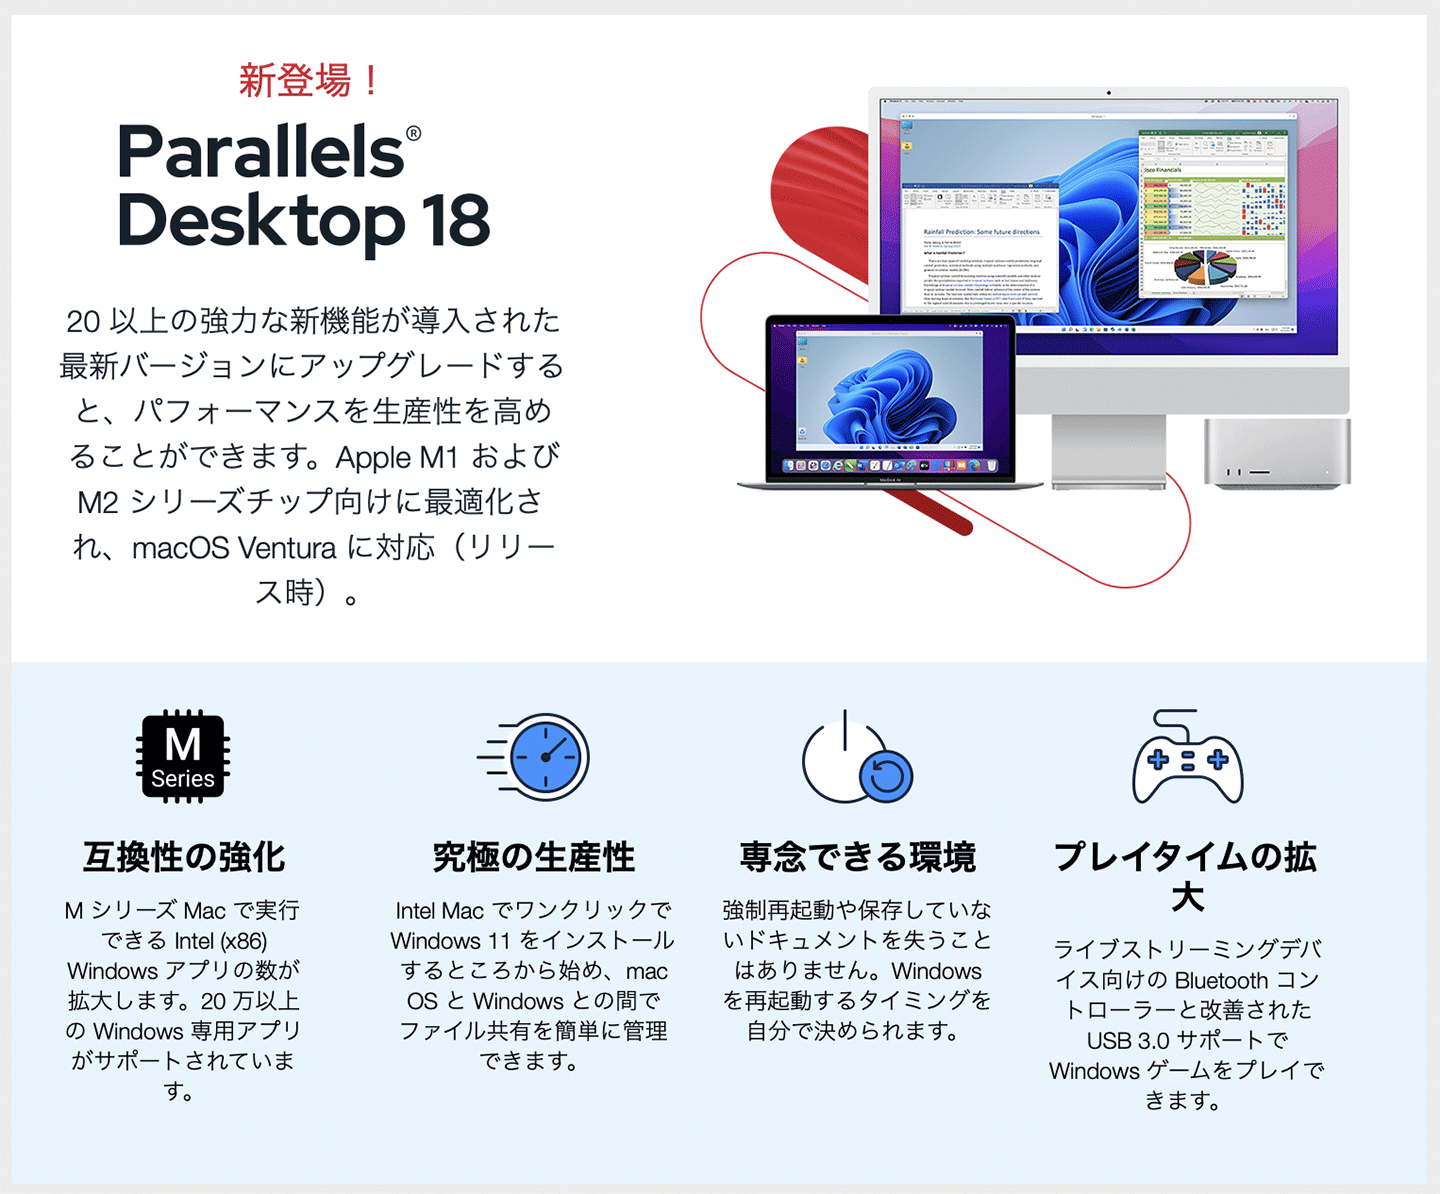 コーレル Mac仮想化ソリューションの最新版 Parallels Desktop 18 For Mac をリリース ソフトウェア Mac Otakara